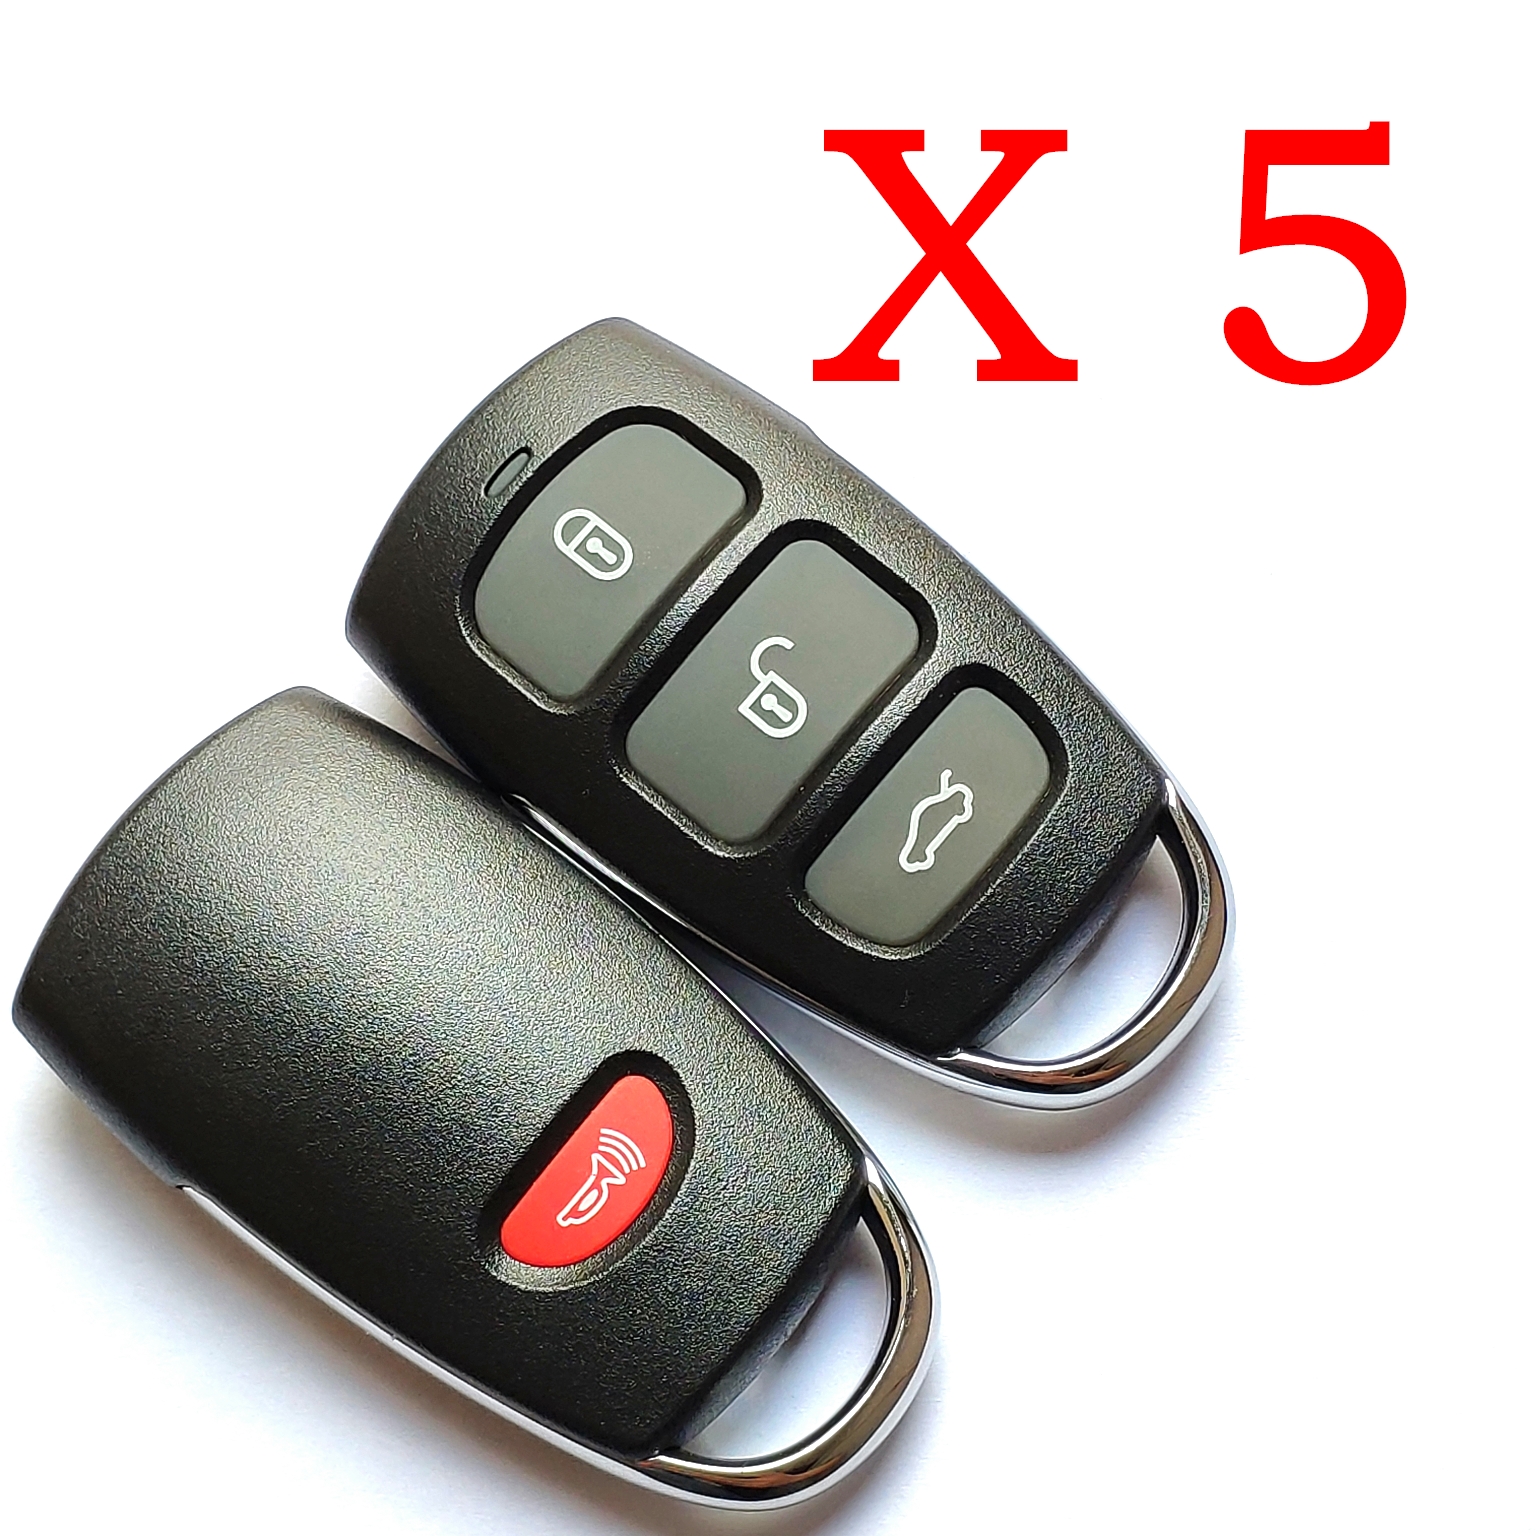 5 pieces Xhorse VVDI Hyundai  Type 4 Universal Remote Control - XKHY04EN